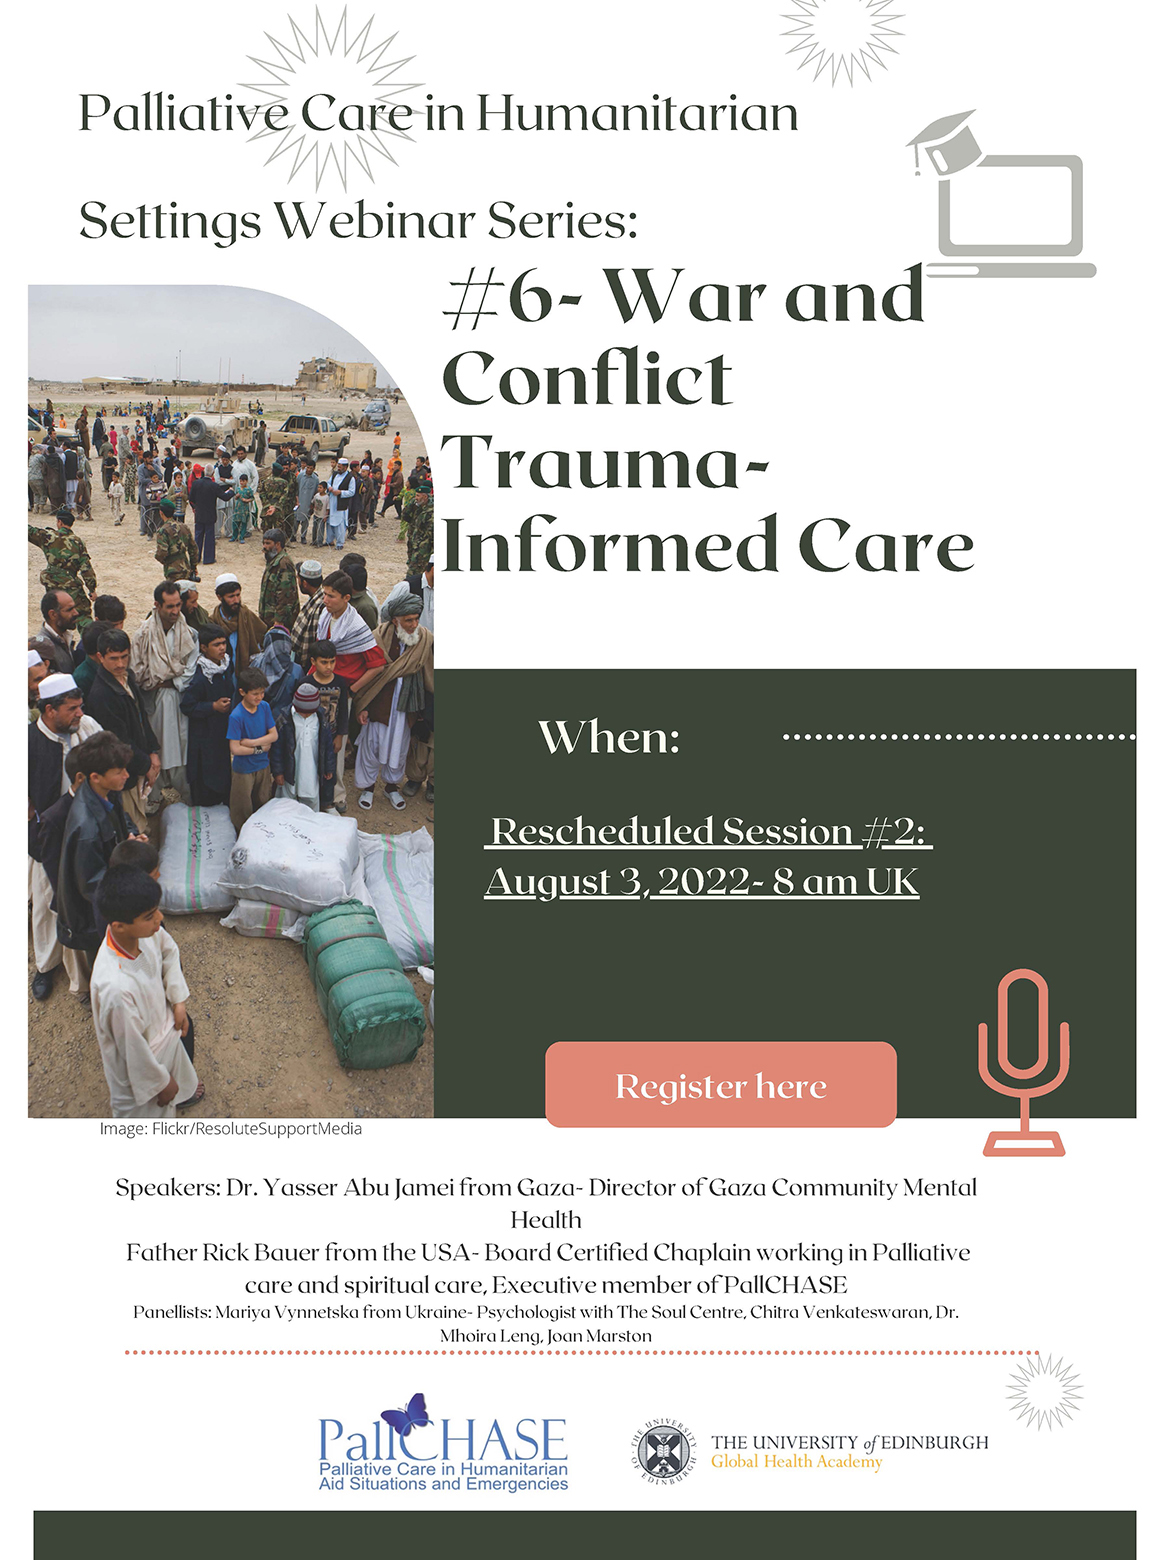 Palliative Care in Humanitarian Settings Webinar Series Poster